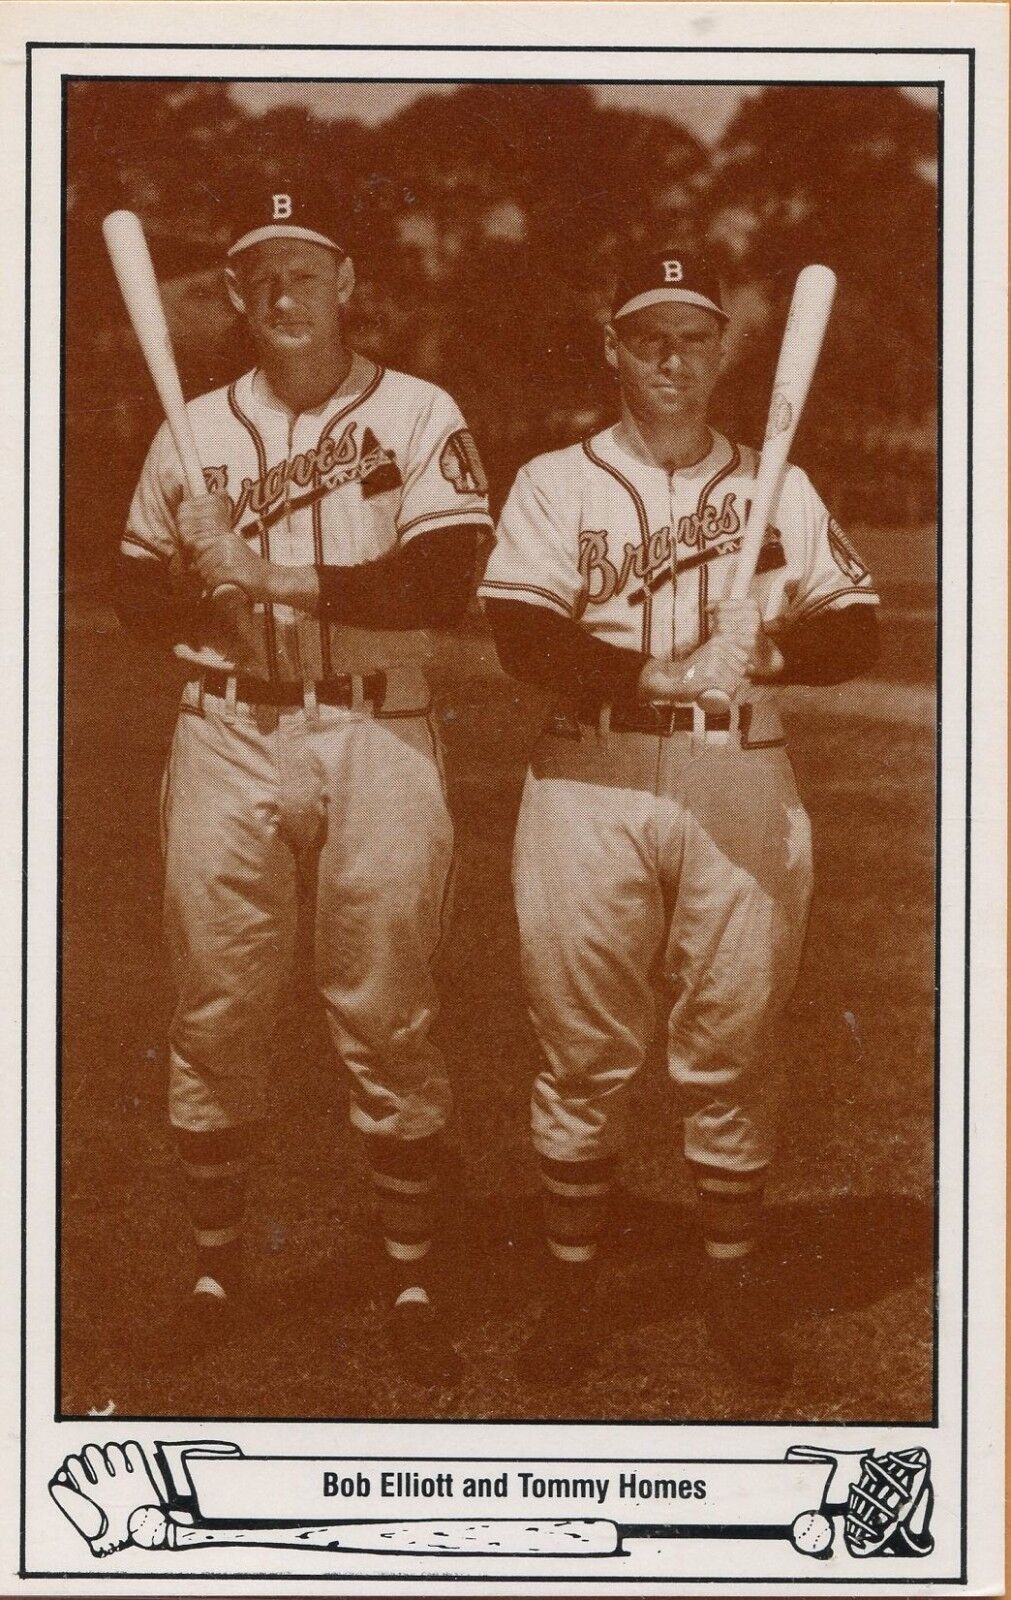 1983 TCMA Postcard # 10 - 1948 Braves -- Bob Elliott and Tommy Holmes